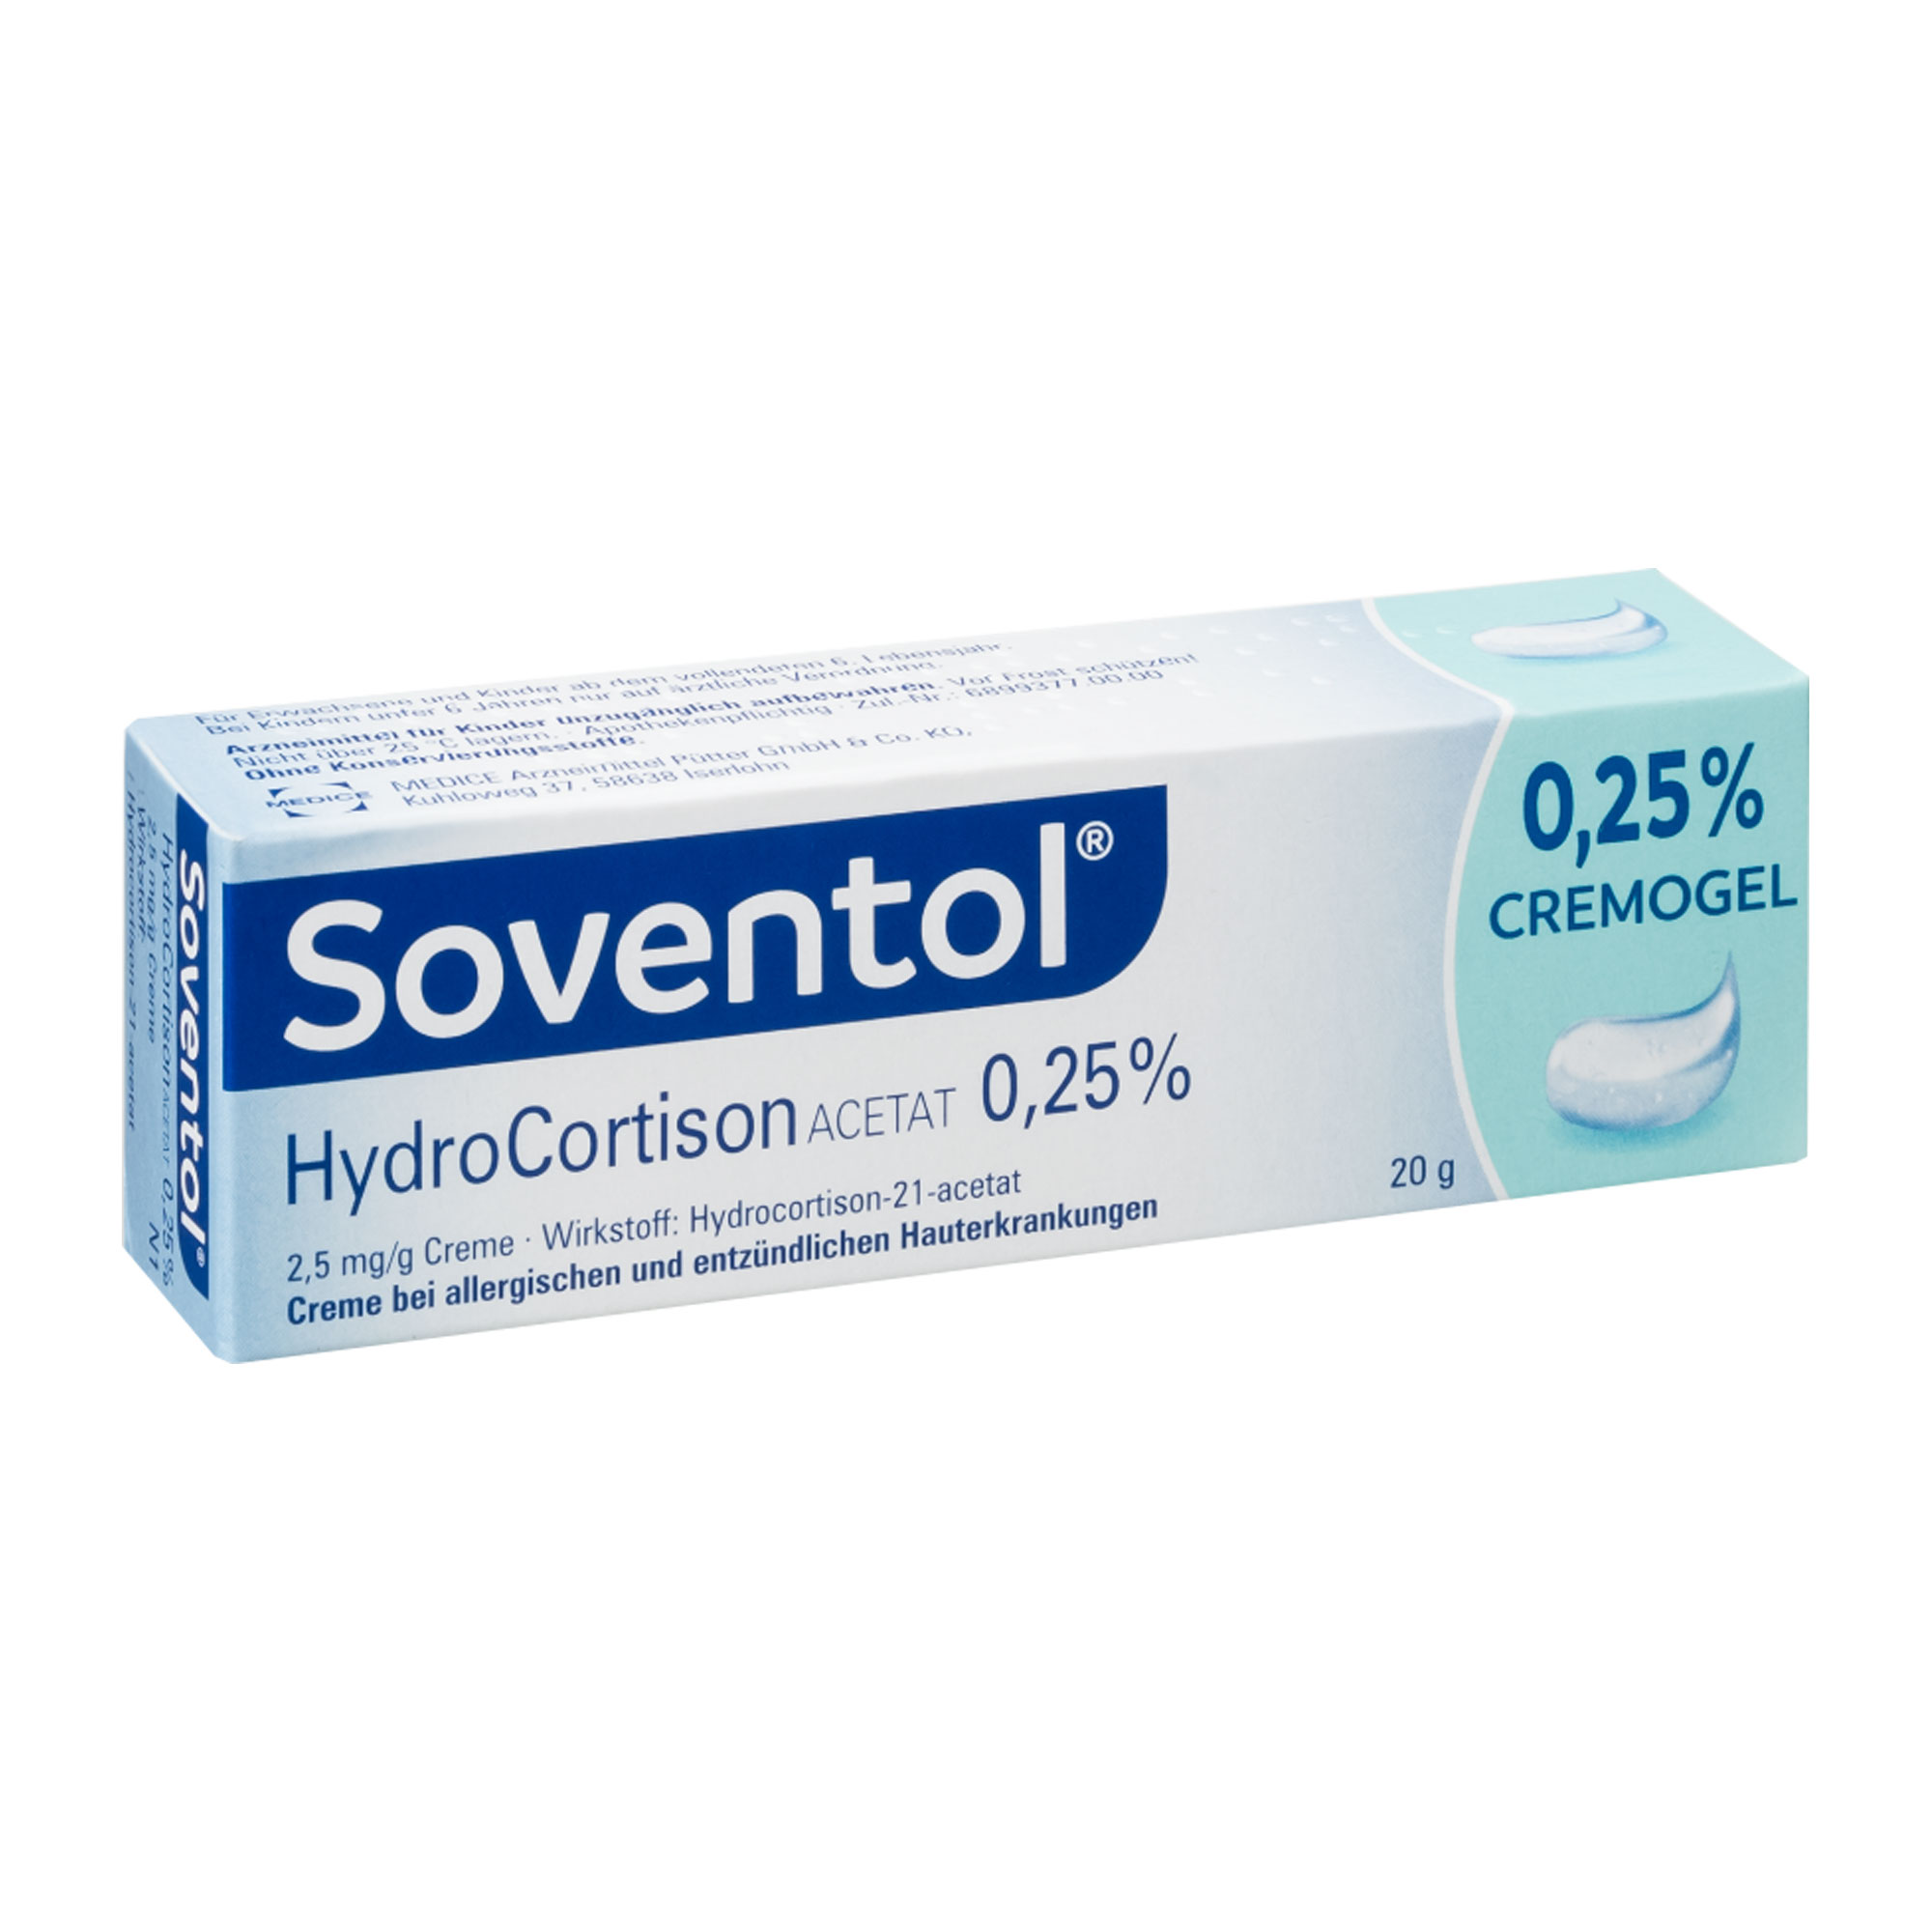 Soventol Hydrocortisonacetat 0,25 % Creme Umverpackung